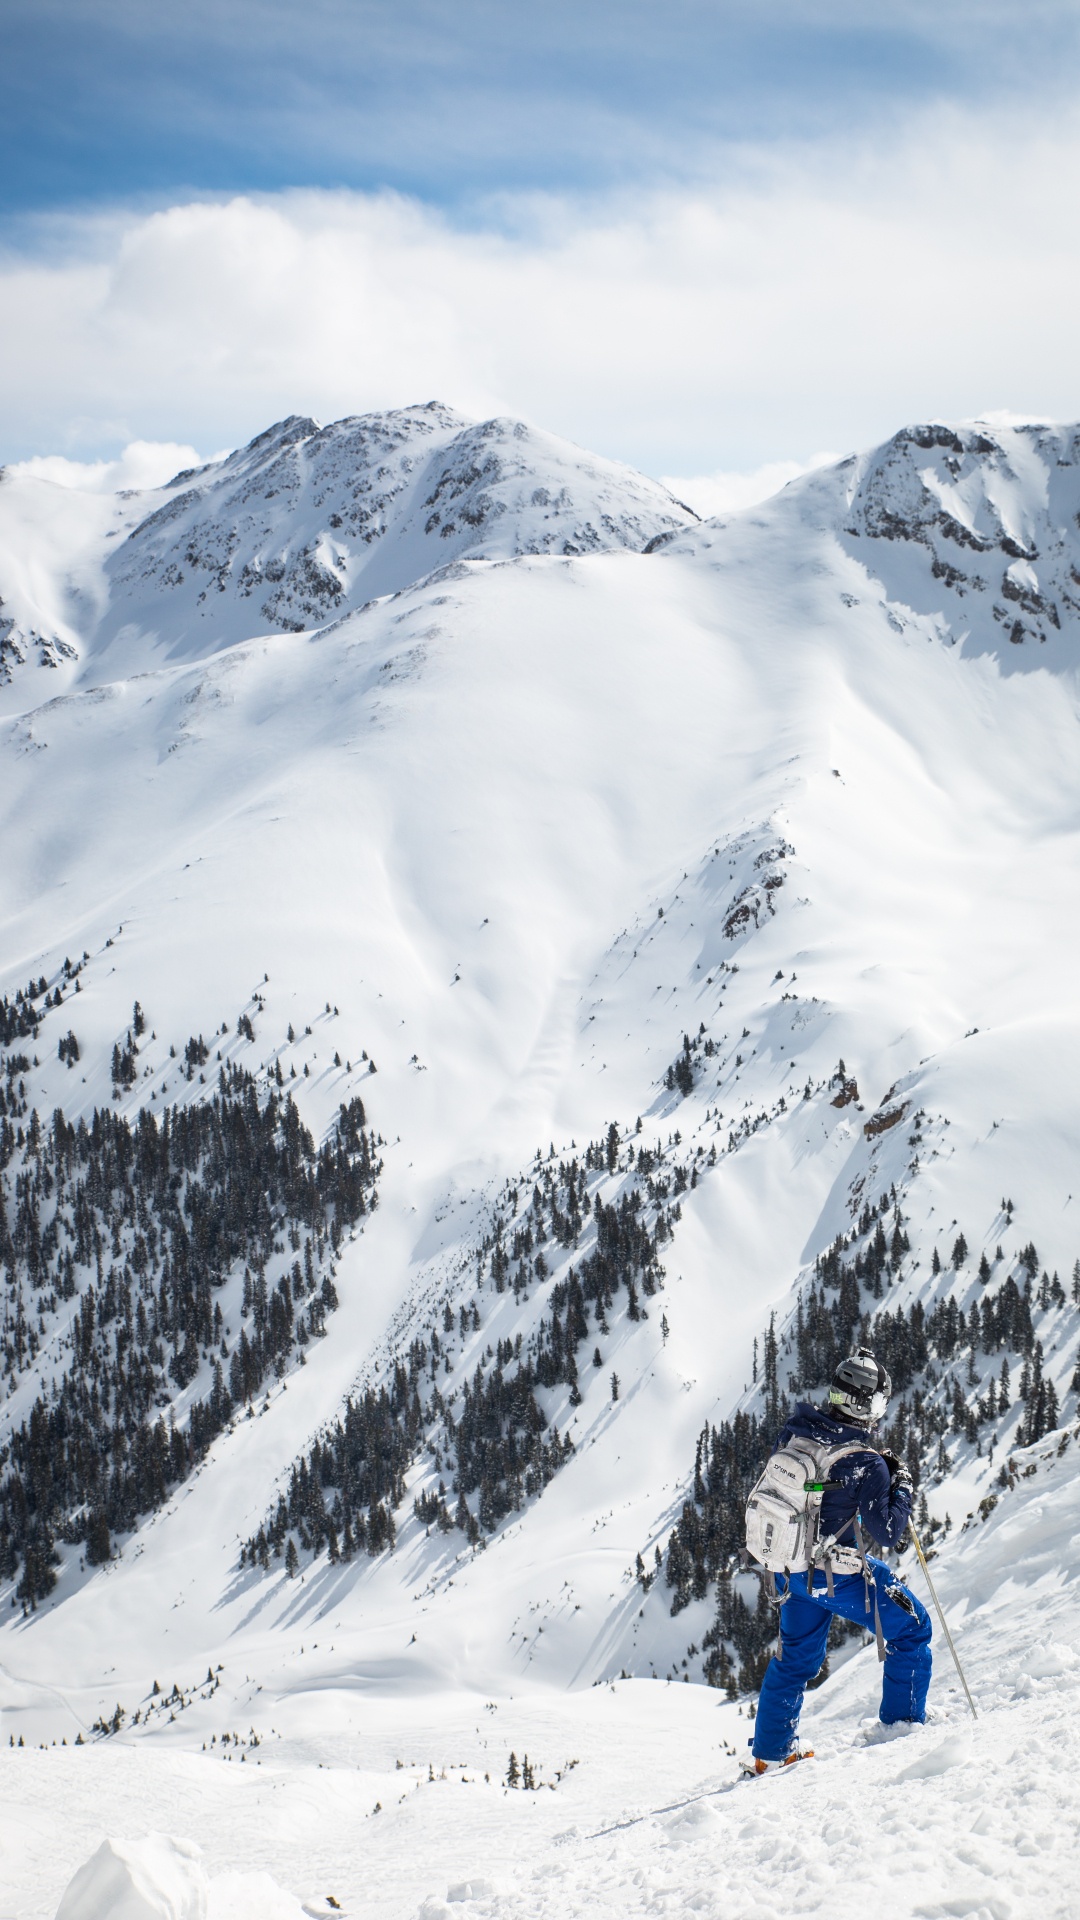 Personne à Cheval Sur le Ski de Neige Sur la Montagne Couverte de Neige Pendant la Journée. Wallpaper in 1080x1920 Resolution